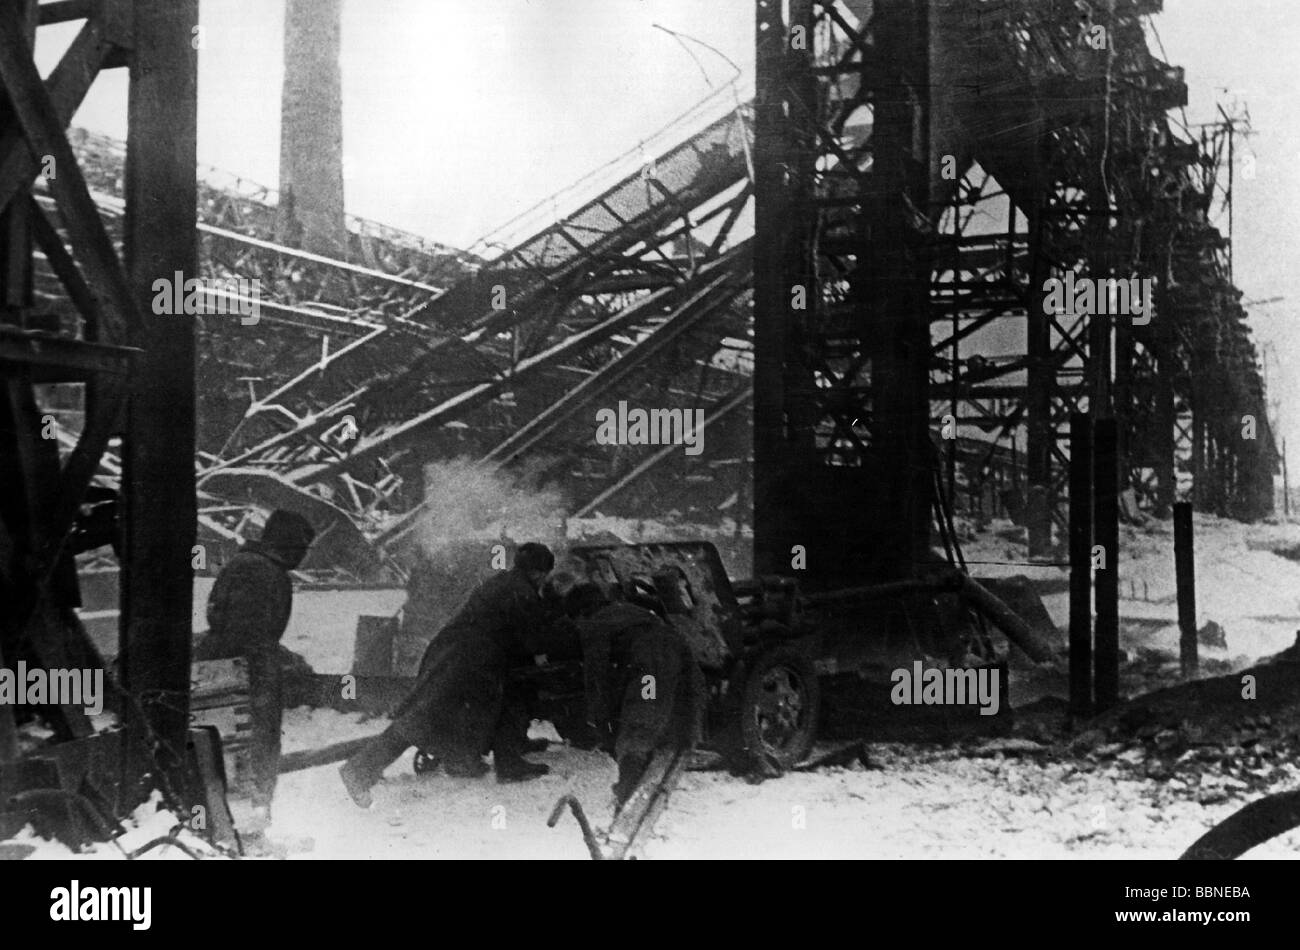 Événements, seconde Guerre mondiale / seconde Guerre mondiale, Stalingrad 1942 / 1943, artillerie soviétique pendant les fusillements à l'usine de tracteurs « Red October », Banque D'Images